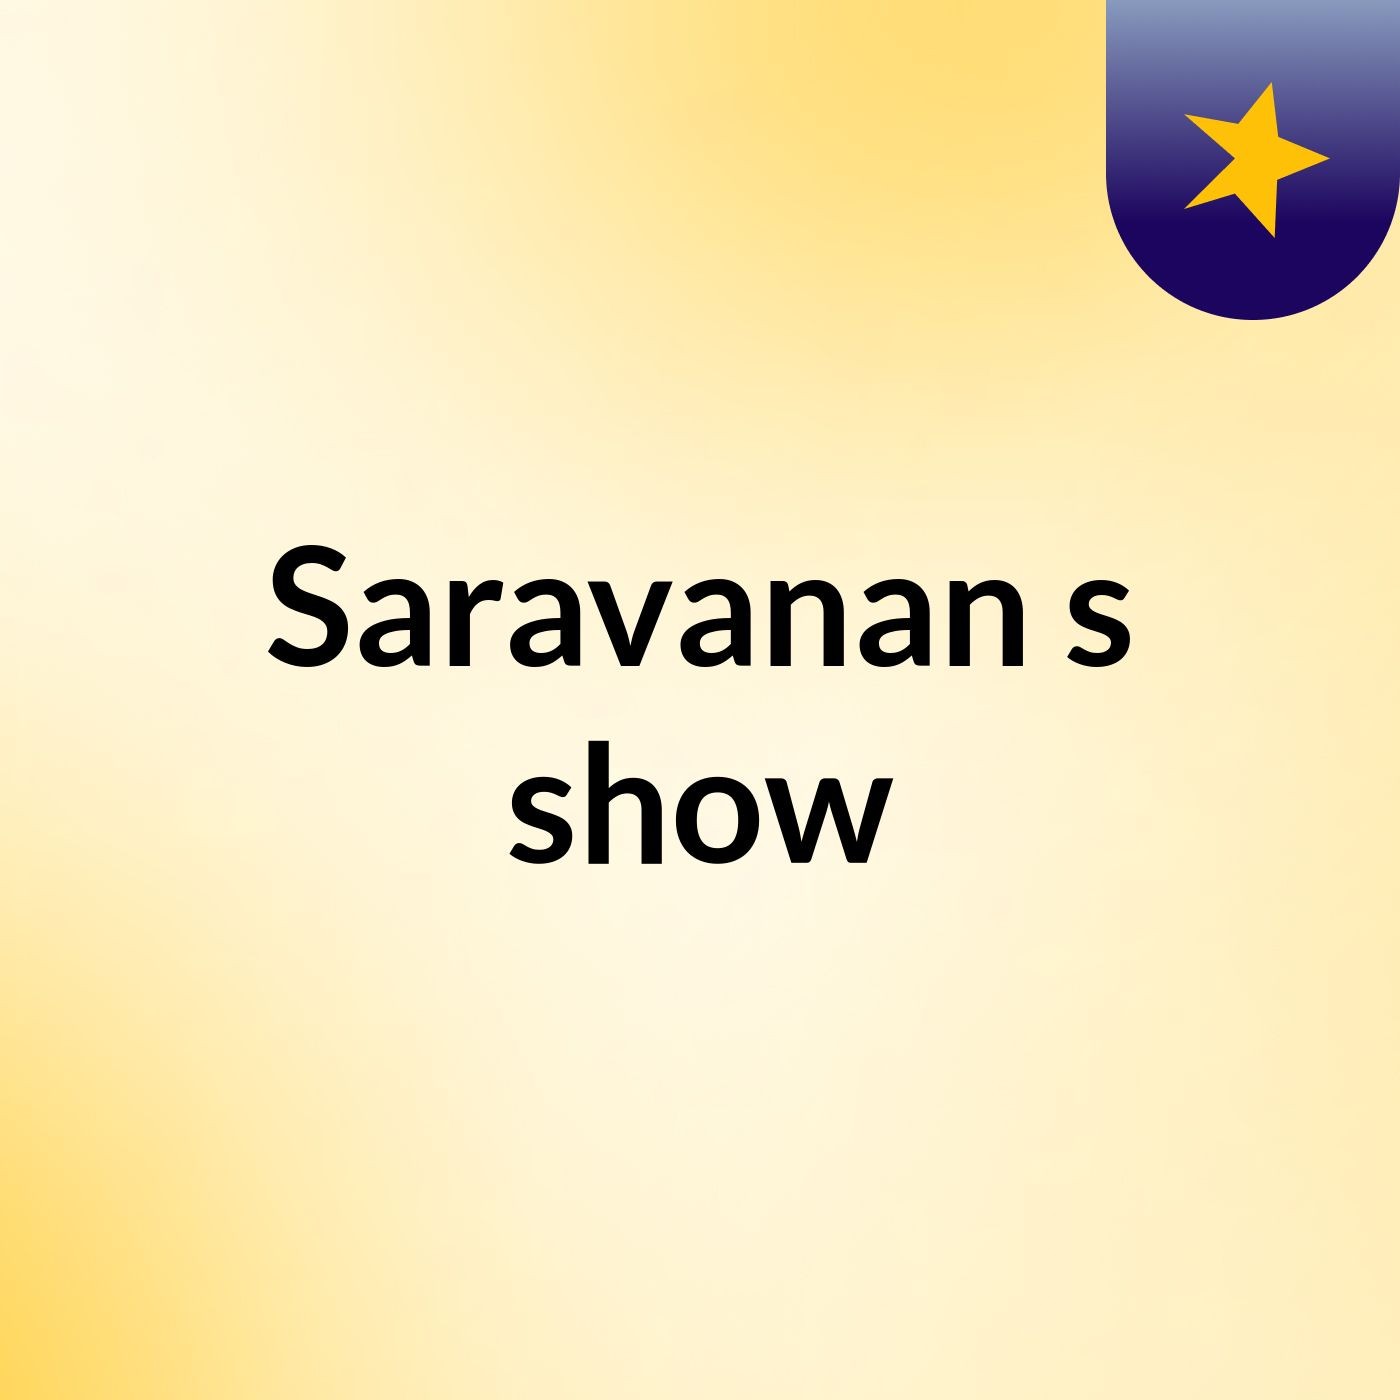 Saravanan's show